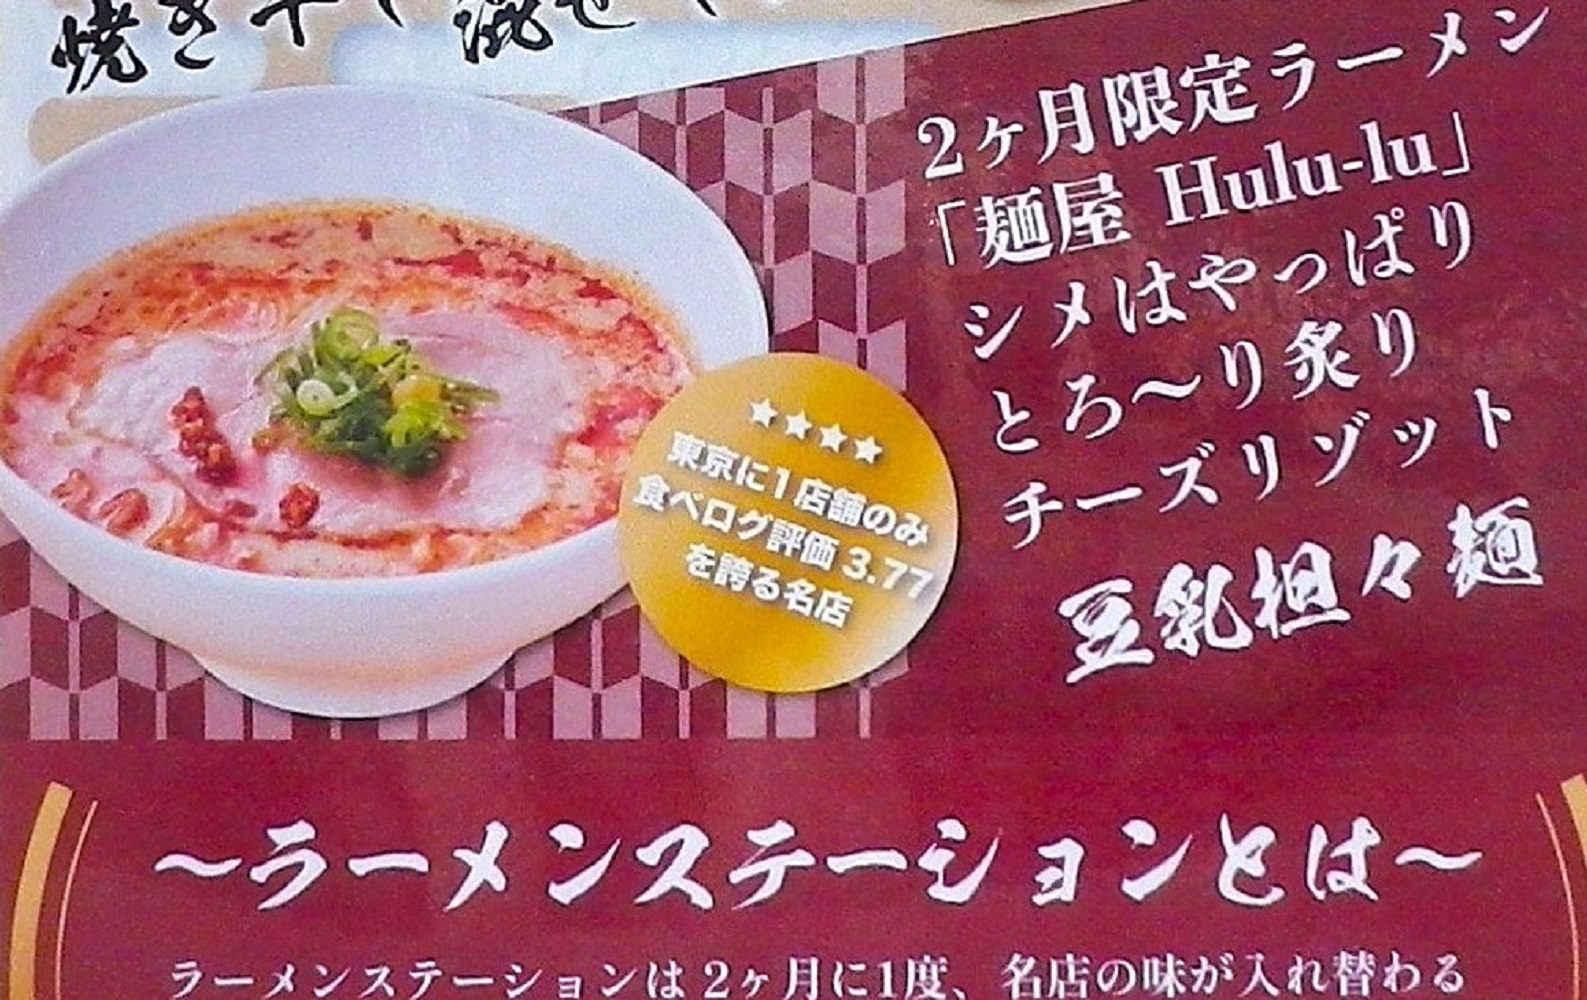 11月、12月の二か月限定ラーメン「麺屋 Hulu-lu」の「豆乳担々麺」。